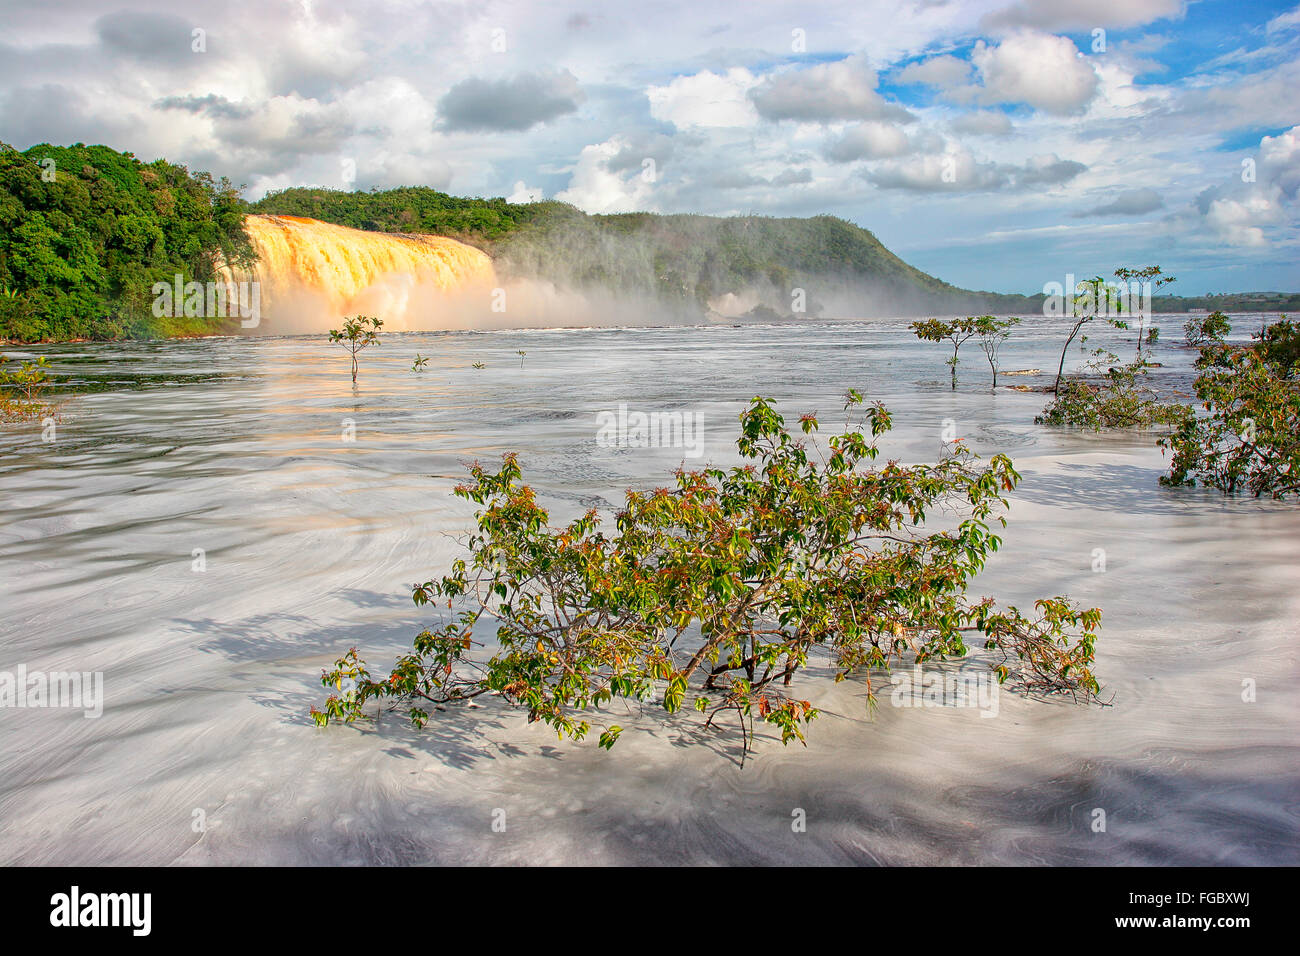 E dei luoghi più belli del Venezuela è il lago di Canaima e il suo surroundgs. Il lago è alimentato da diverse piccole cascate wer: Foto Stock